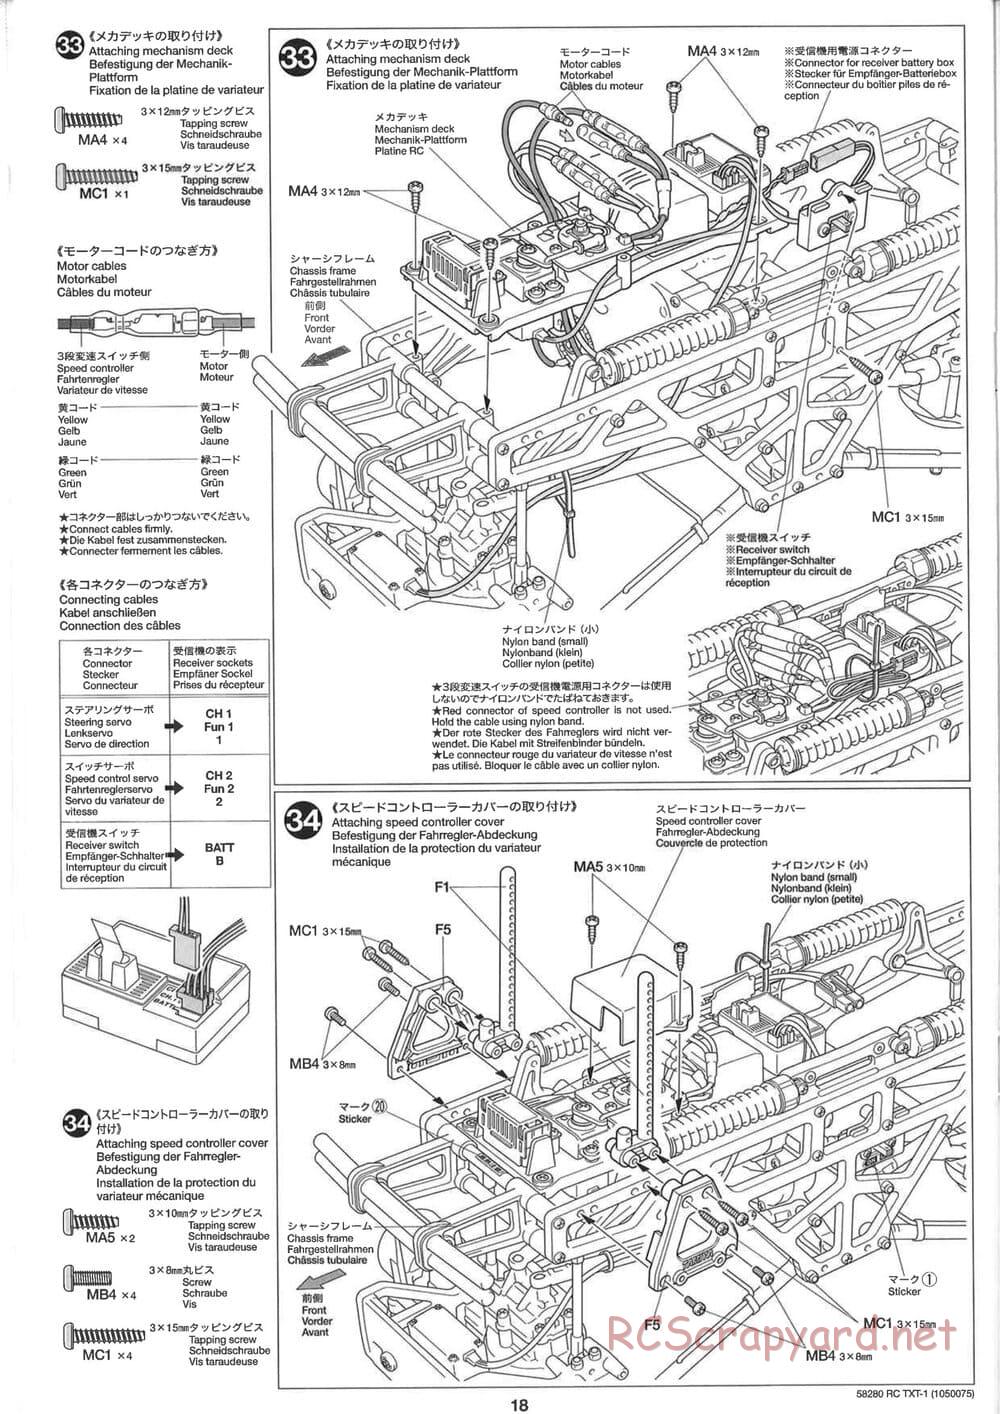 Tamiya - TXT-1 (Tamiya Xtreme Truck) Chassis - Manual - Page 18